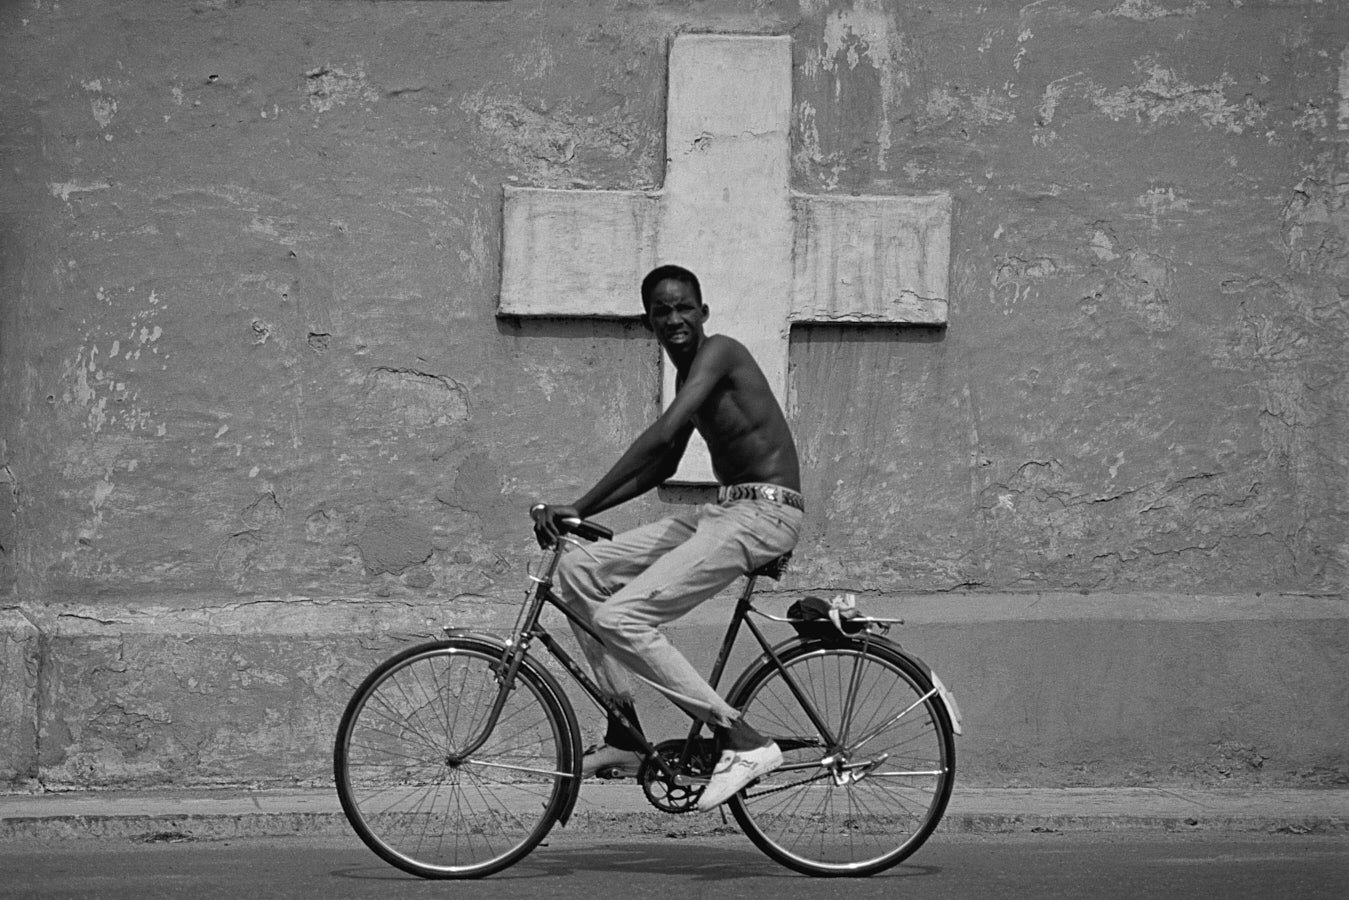 Havana, Cuba - 1995
Per gentile concessione del fotografo Alessandro Dobici